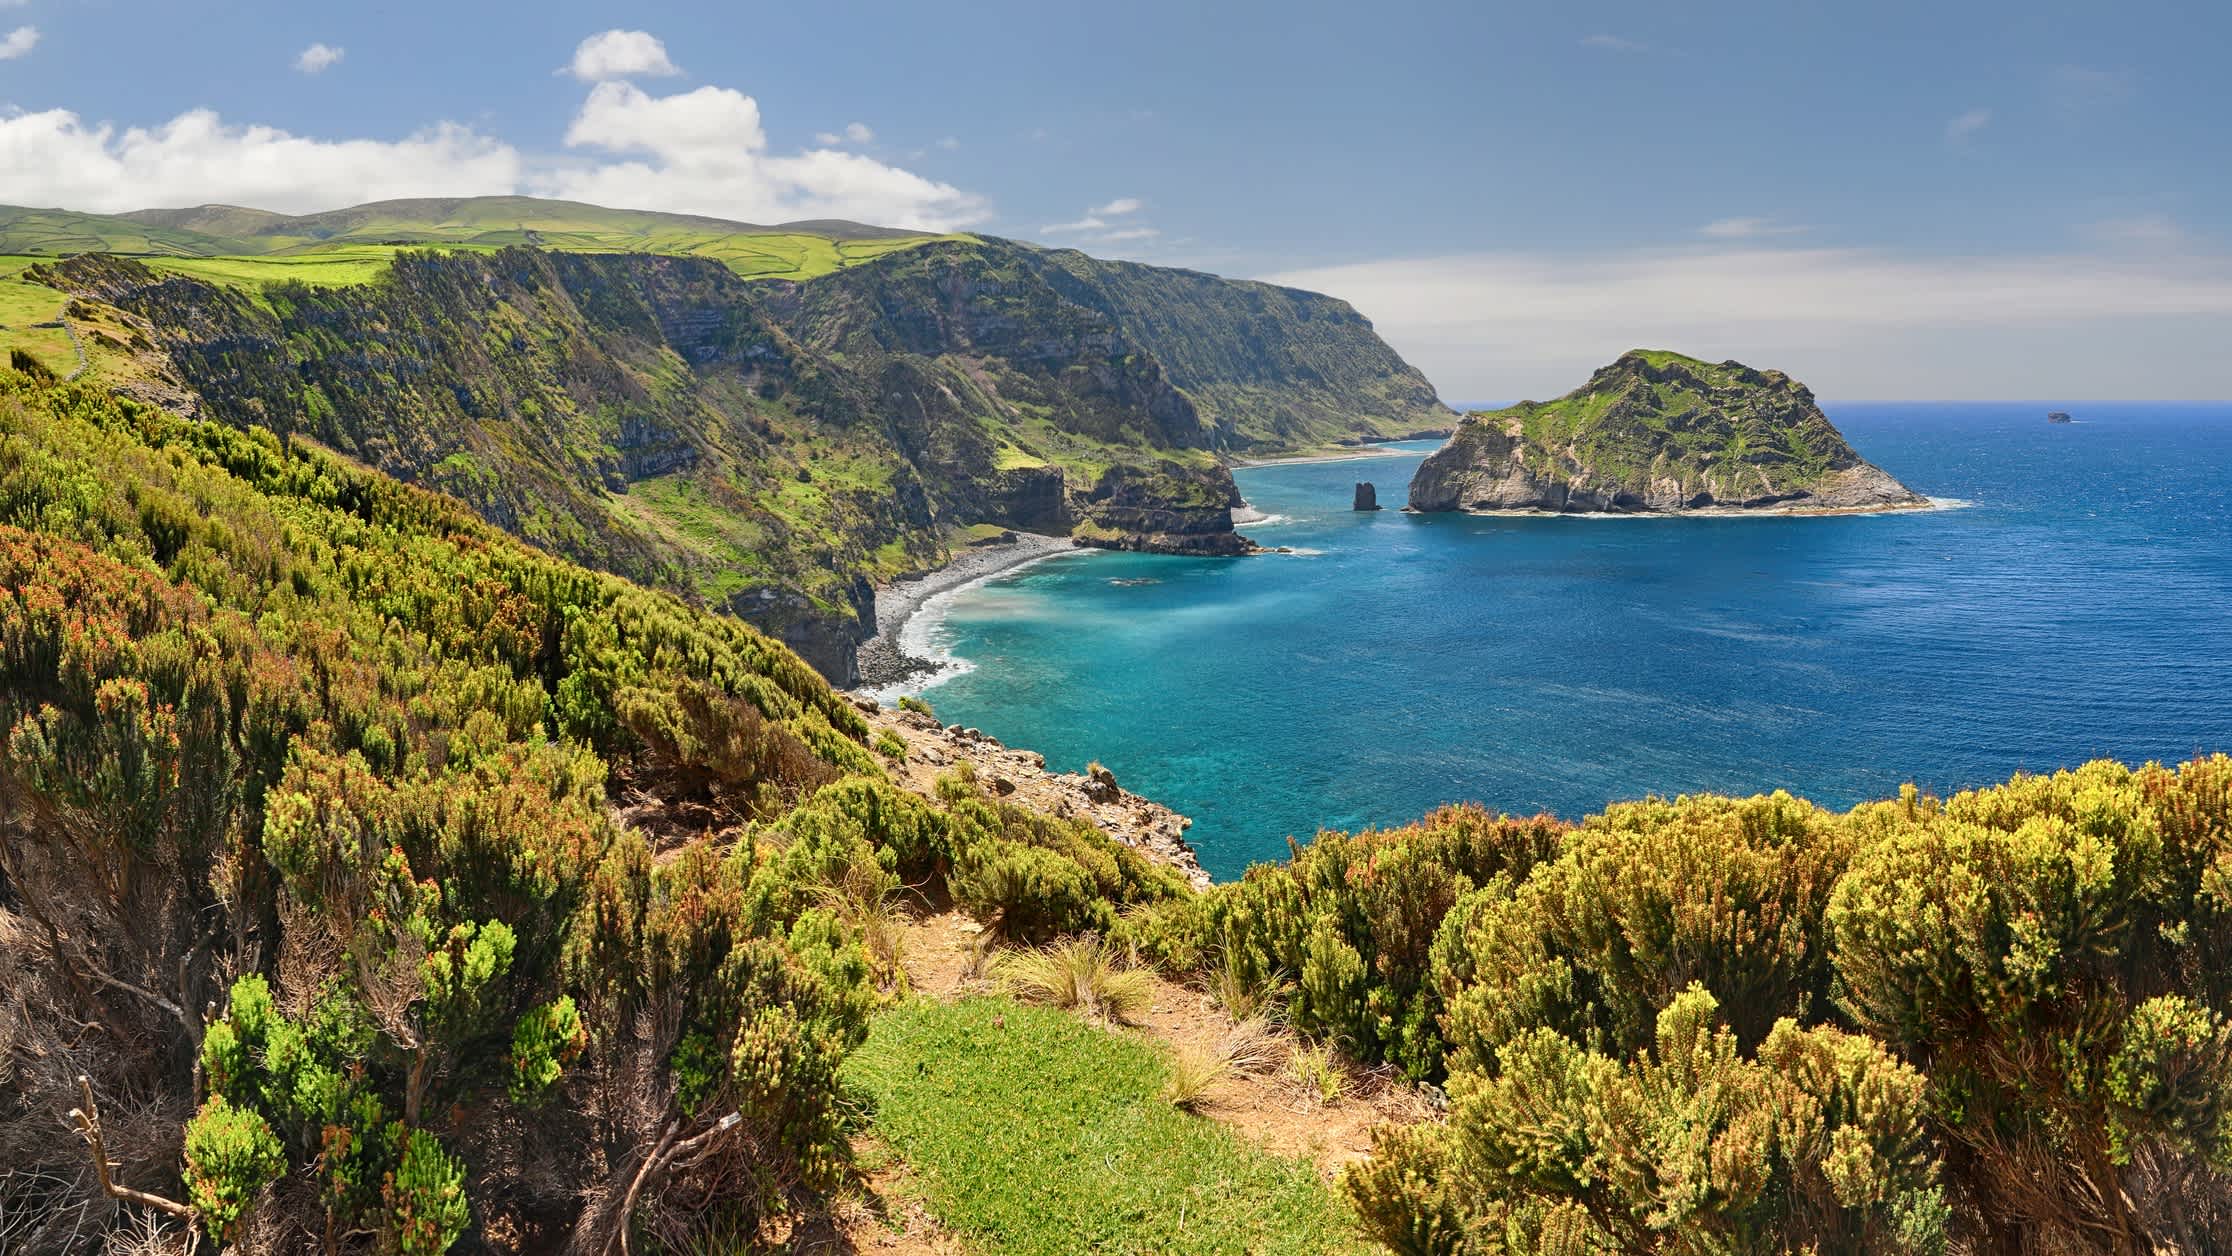 Vue panoramique sur la côte nord de l'île de Flores, près de Ponta Delgada, aux Açores, au Portugal.

